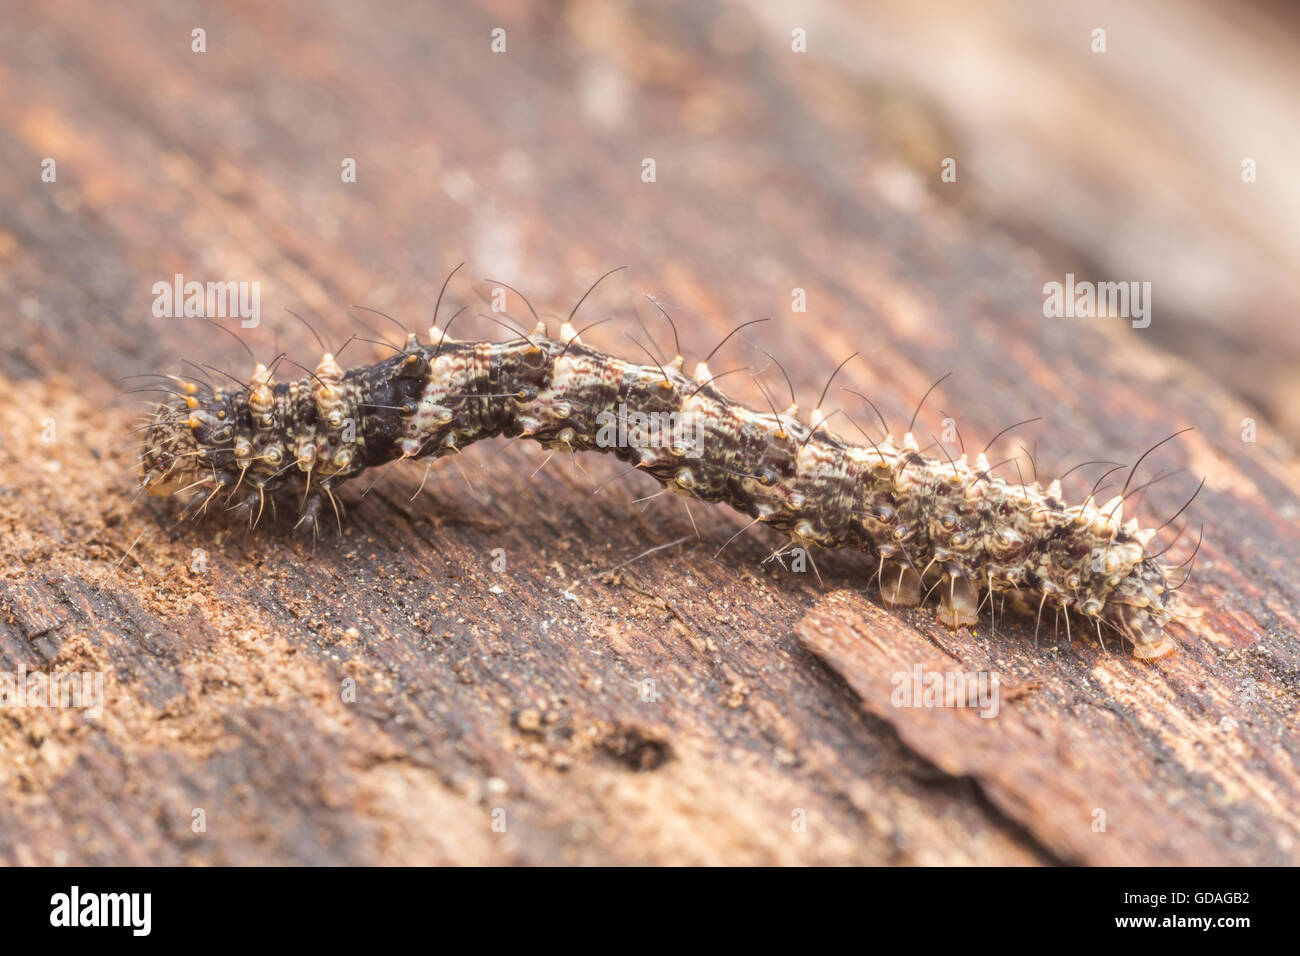 Un fungo comune tignola (Metalectra discalis) caterpillar (larva) esplora un fungo coperto albero morto. Foto Stock